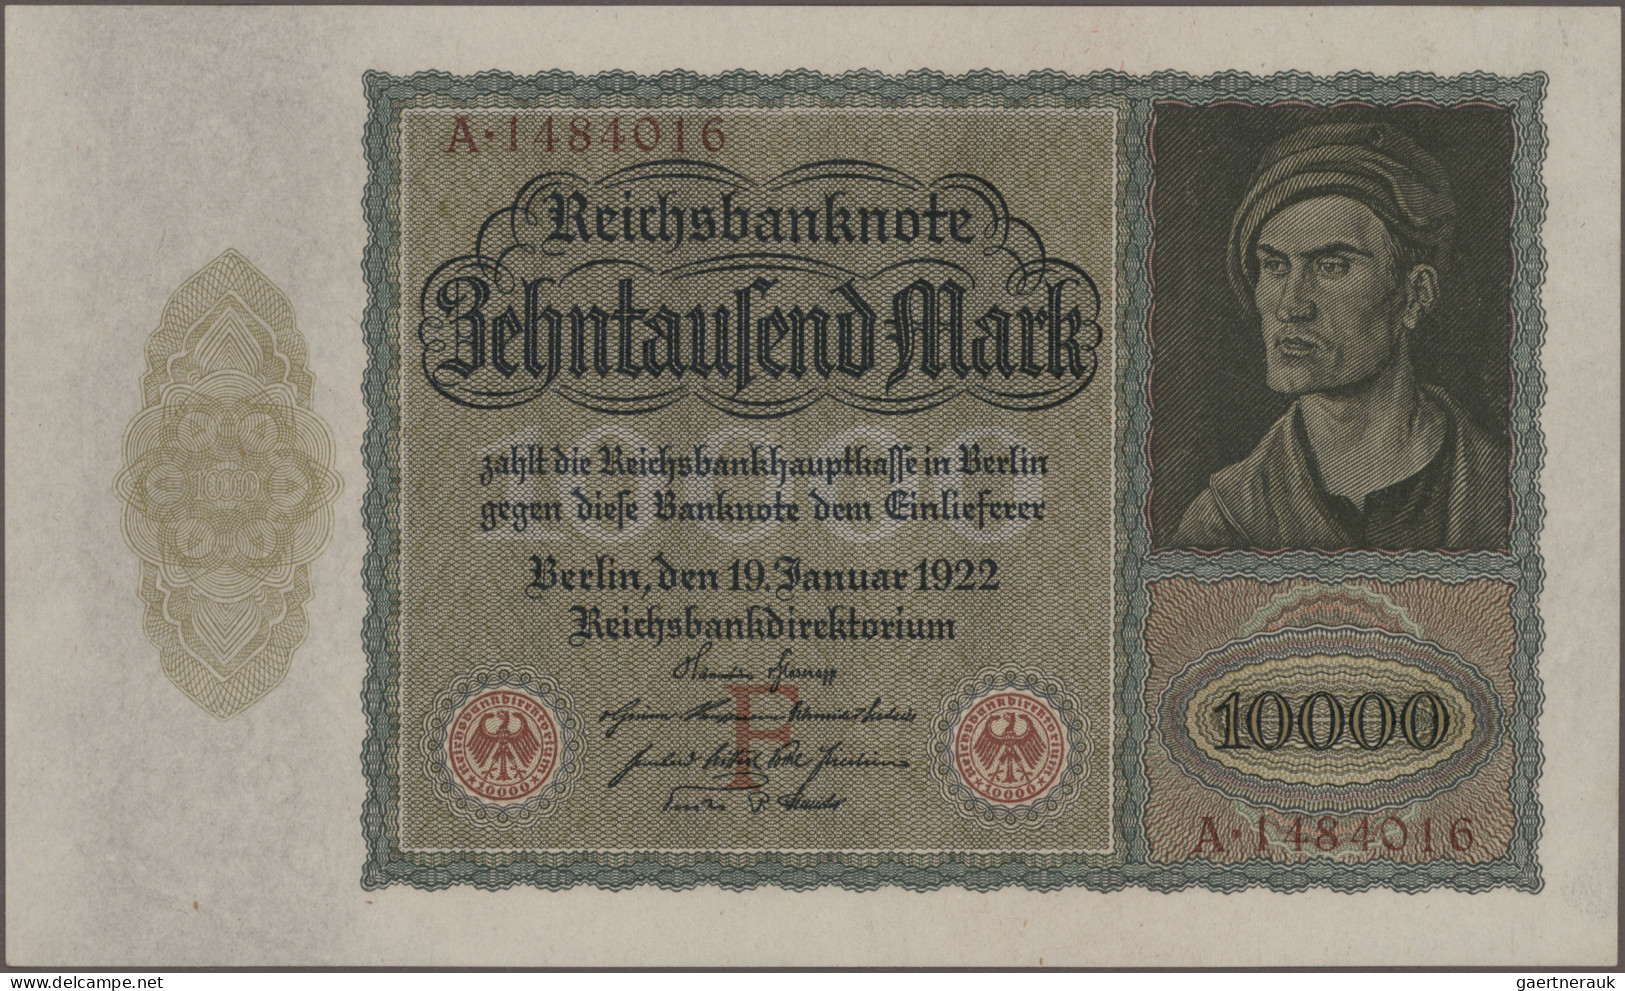 Deutschland - Deutsches Reich bis 1945: Großes Konvolut mit 392 Banknoten der In